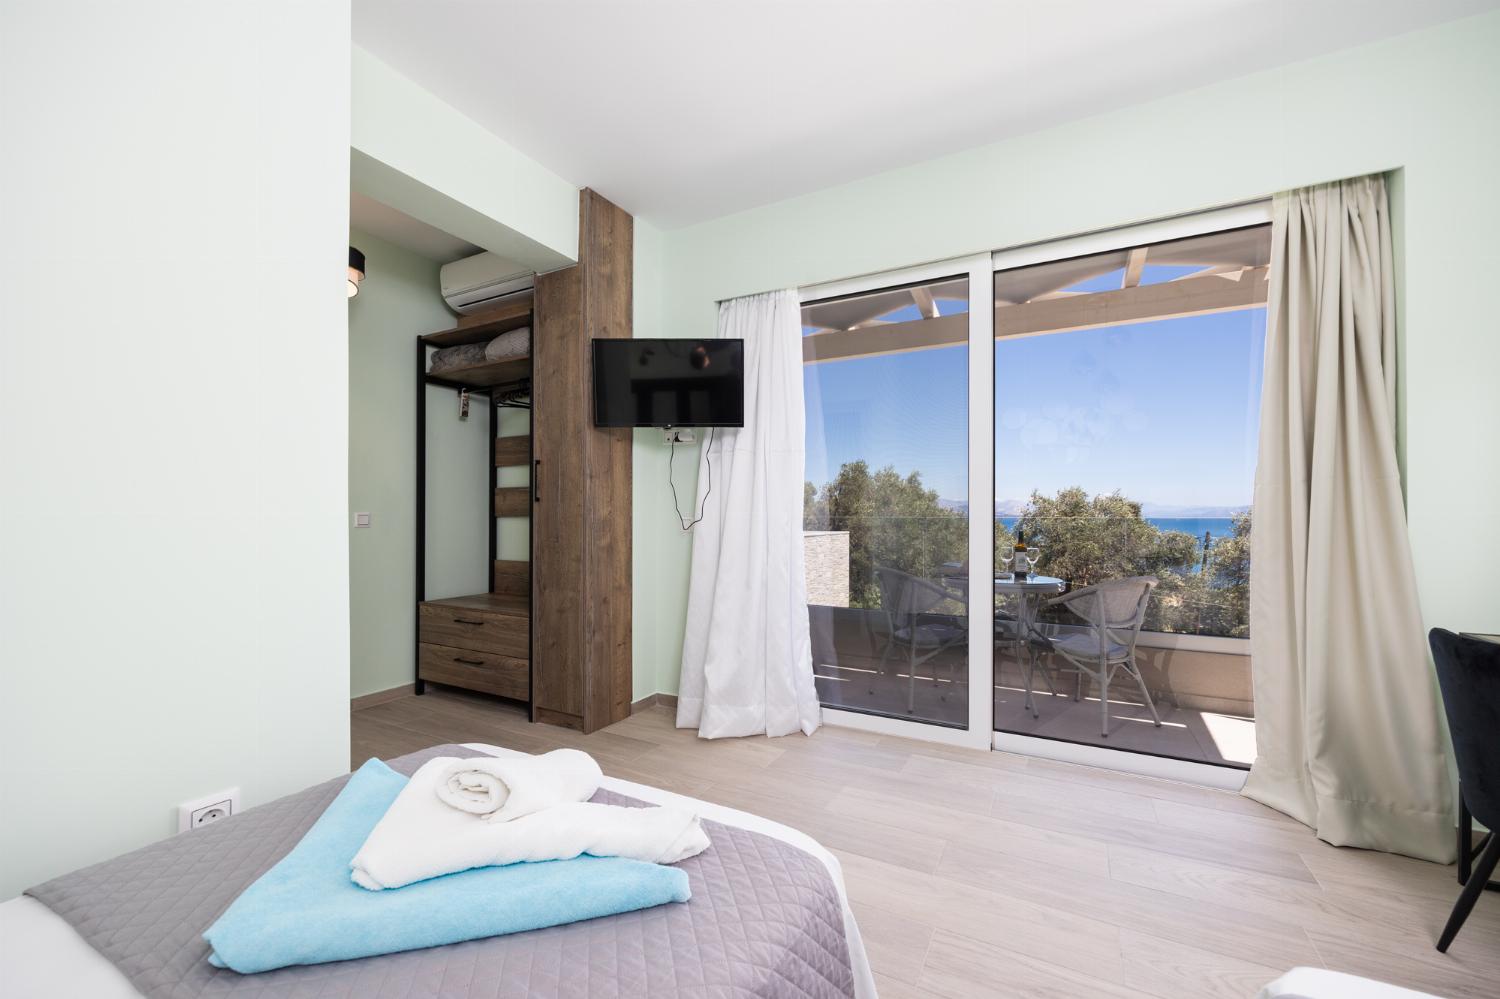 Twin bedroom with en suite bathroom, A/C, TV, and sea views